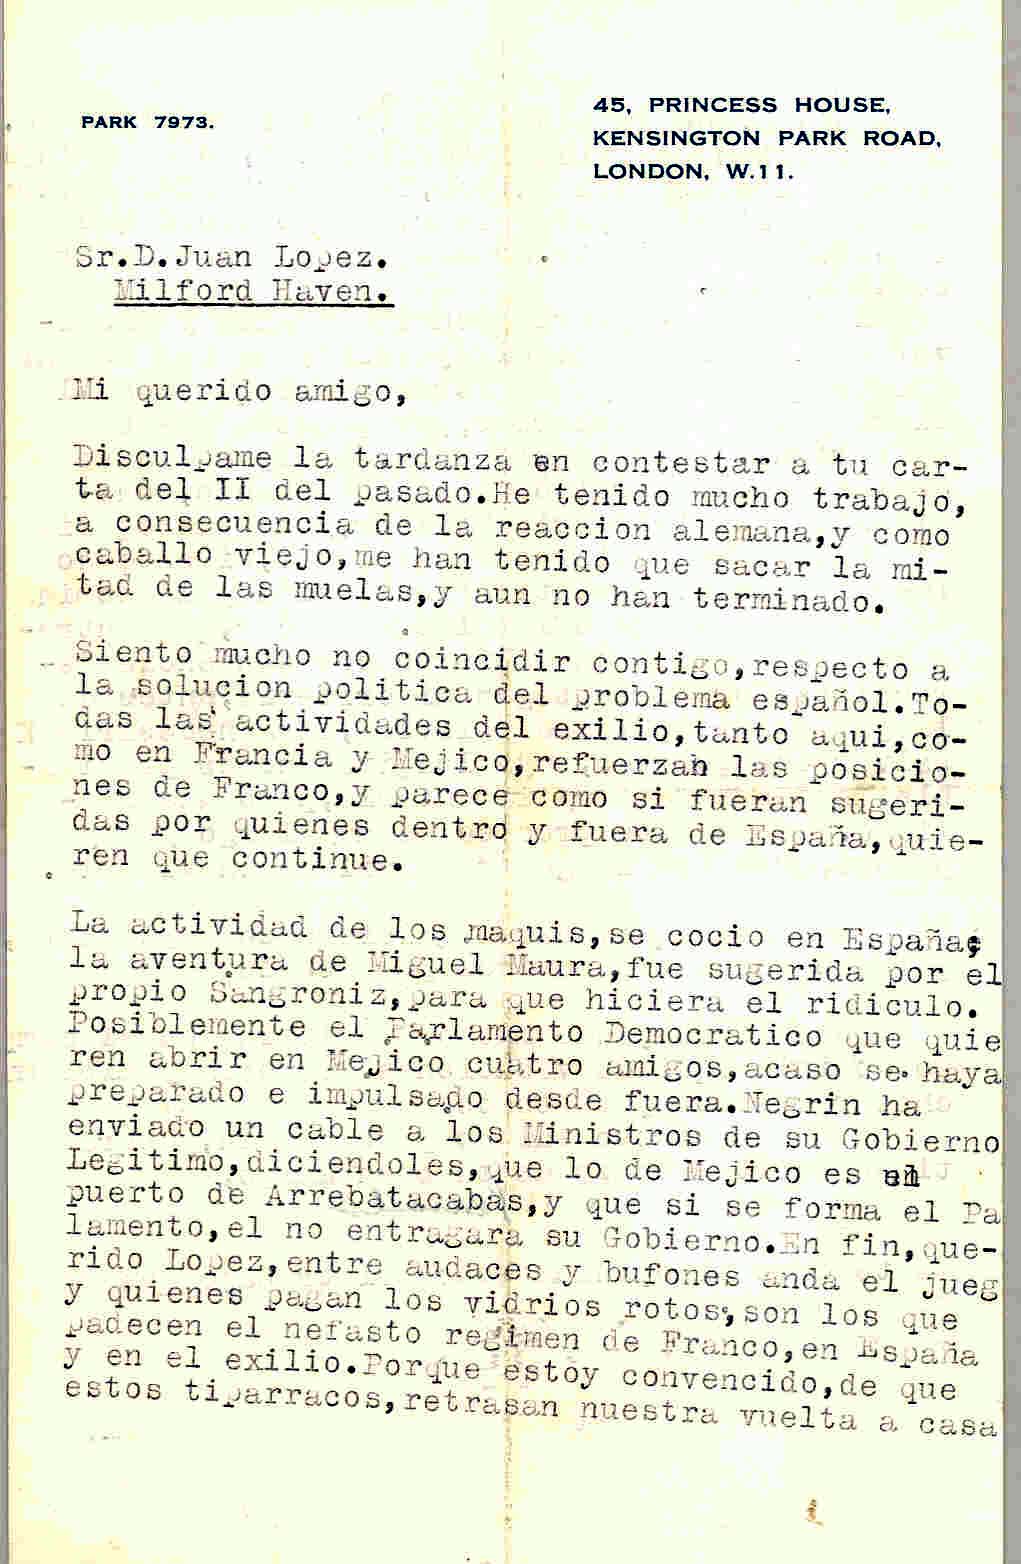 Carta de Segismundo Casado hablando de la influencia de las actividades del exilio a favor de Franco y que el único que podría echar a la Falange es el Ejército.